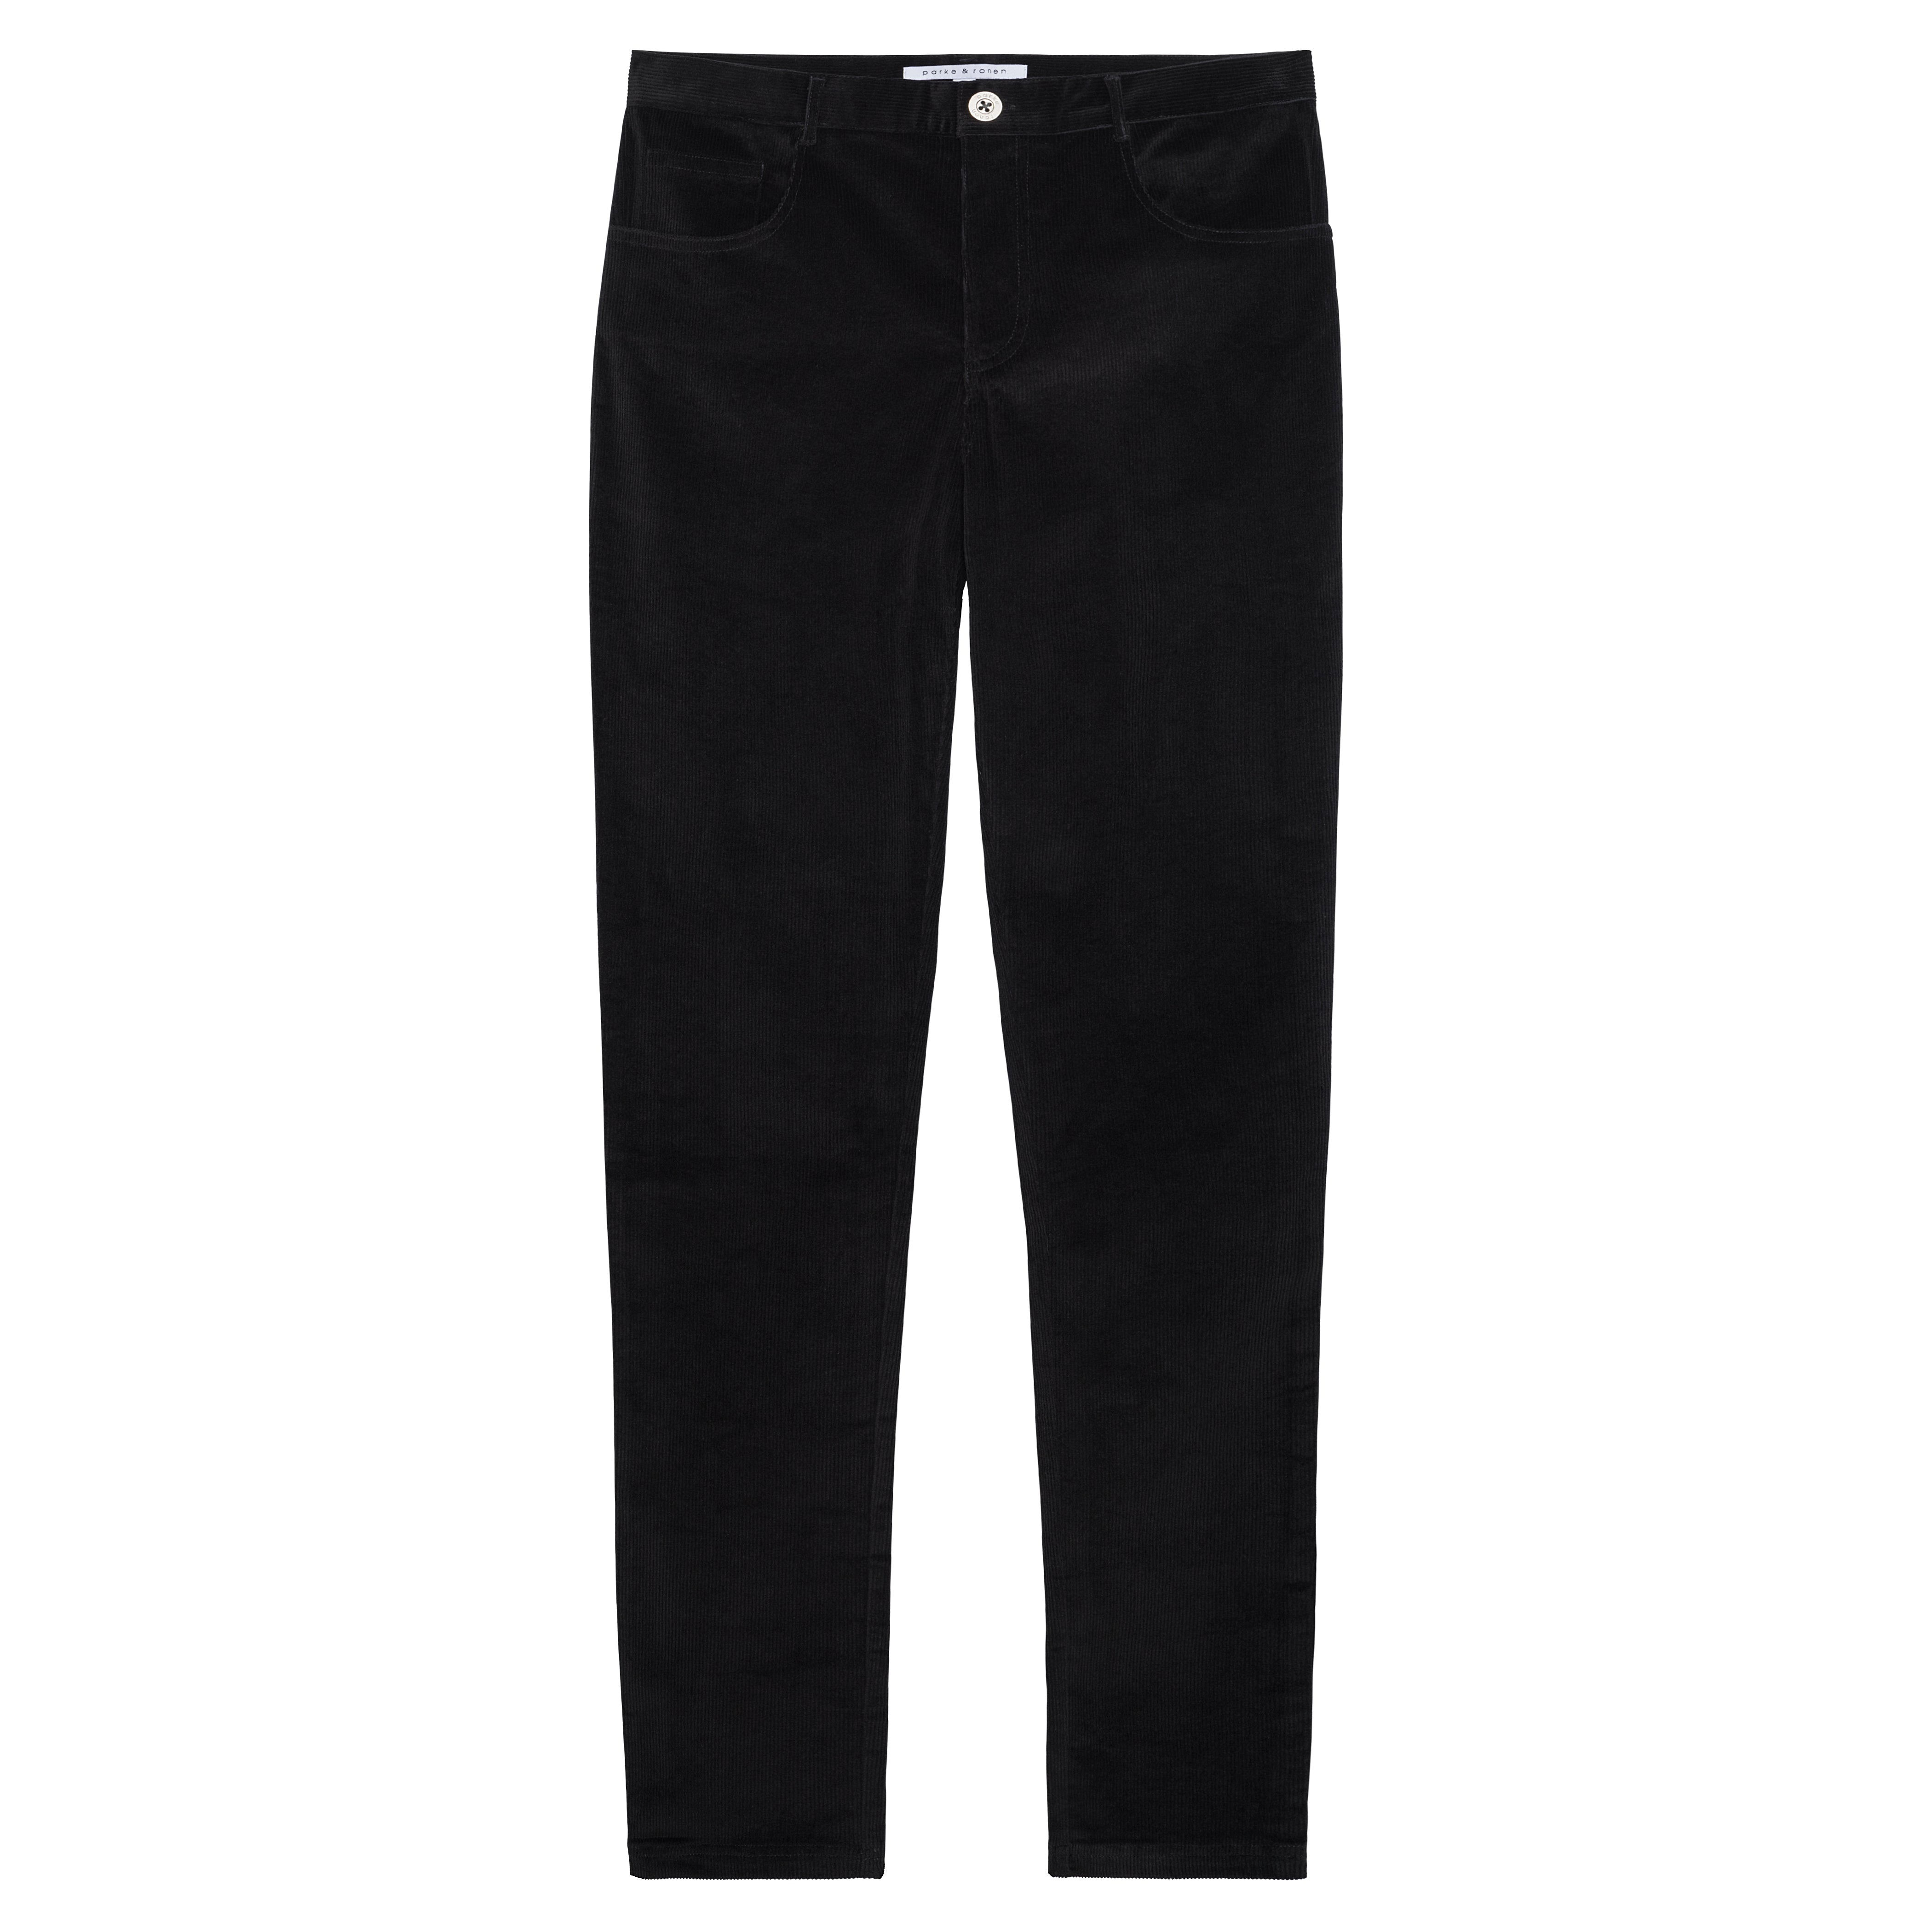 NEW- Black Stretch Corduroy Apollo Jeans